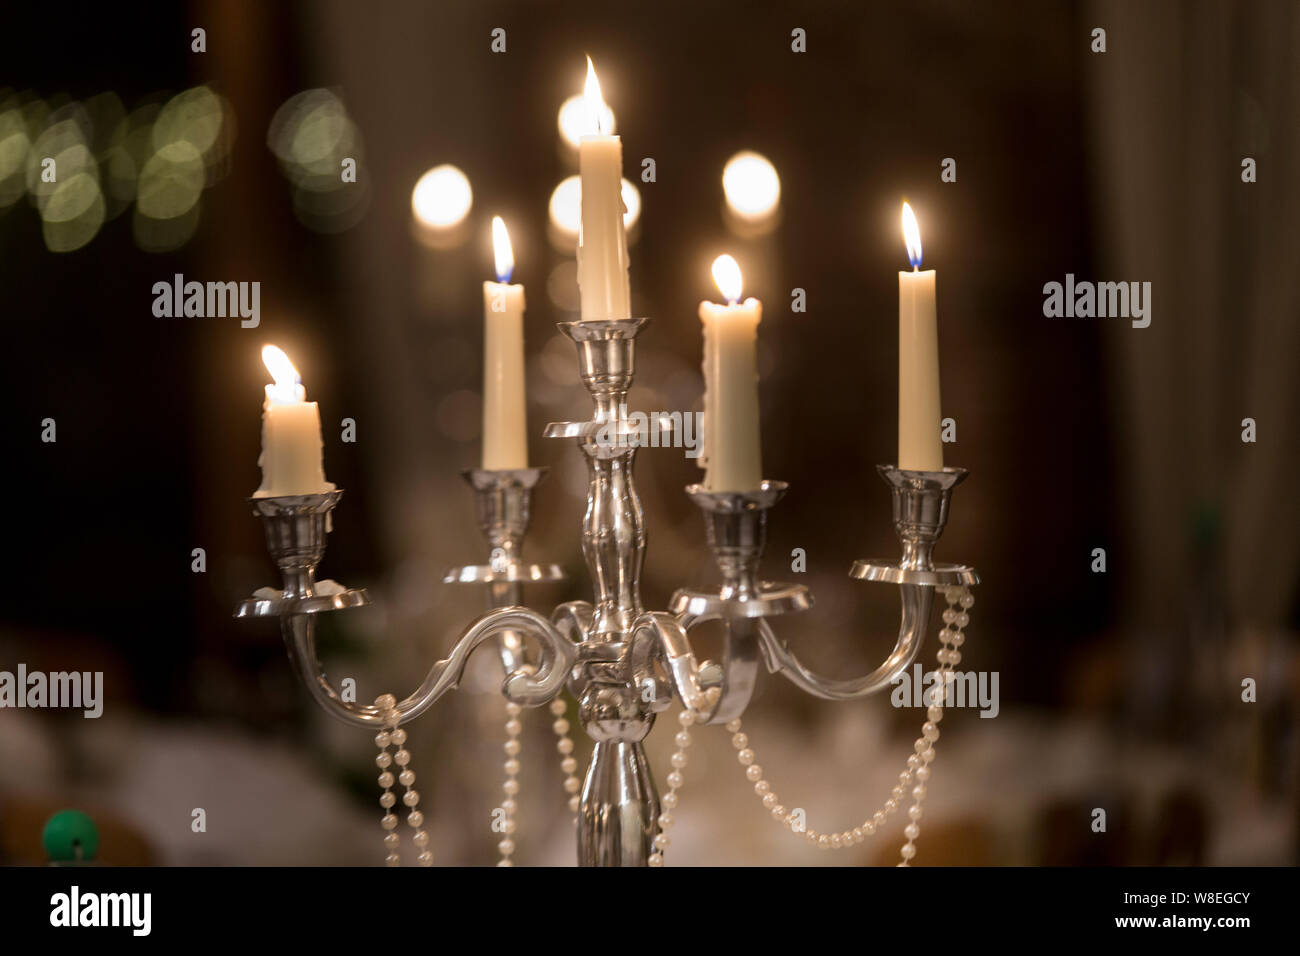 Kerzen Angezündet Stockfotos und -bilder Kaufen - Alamy